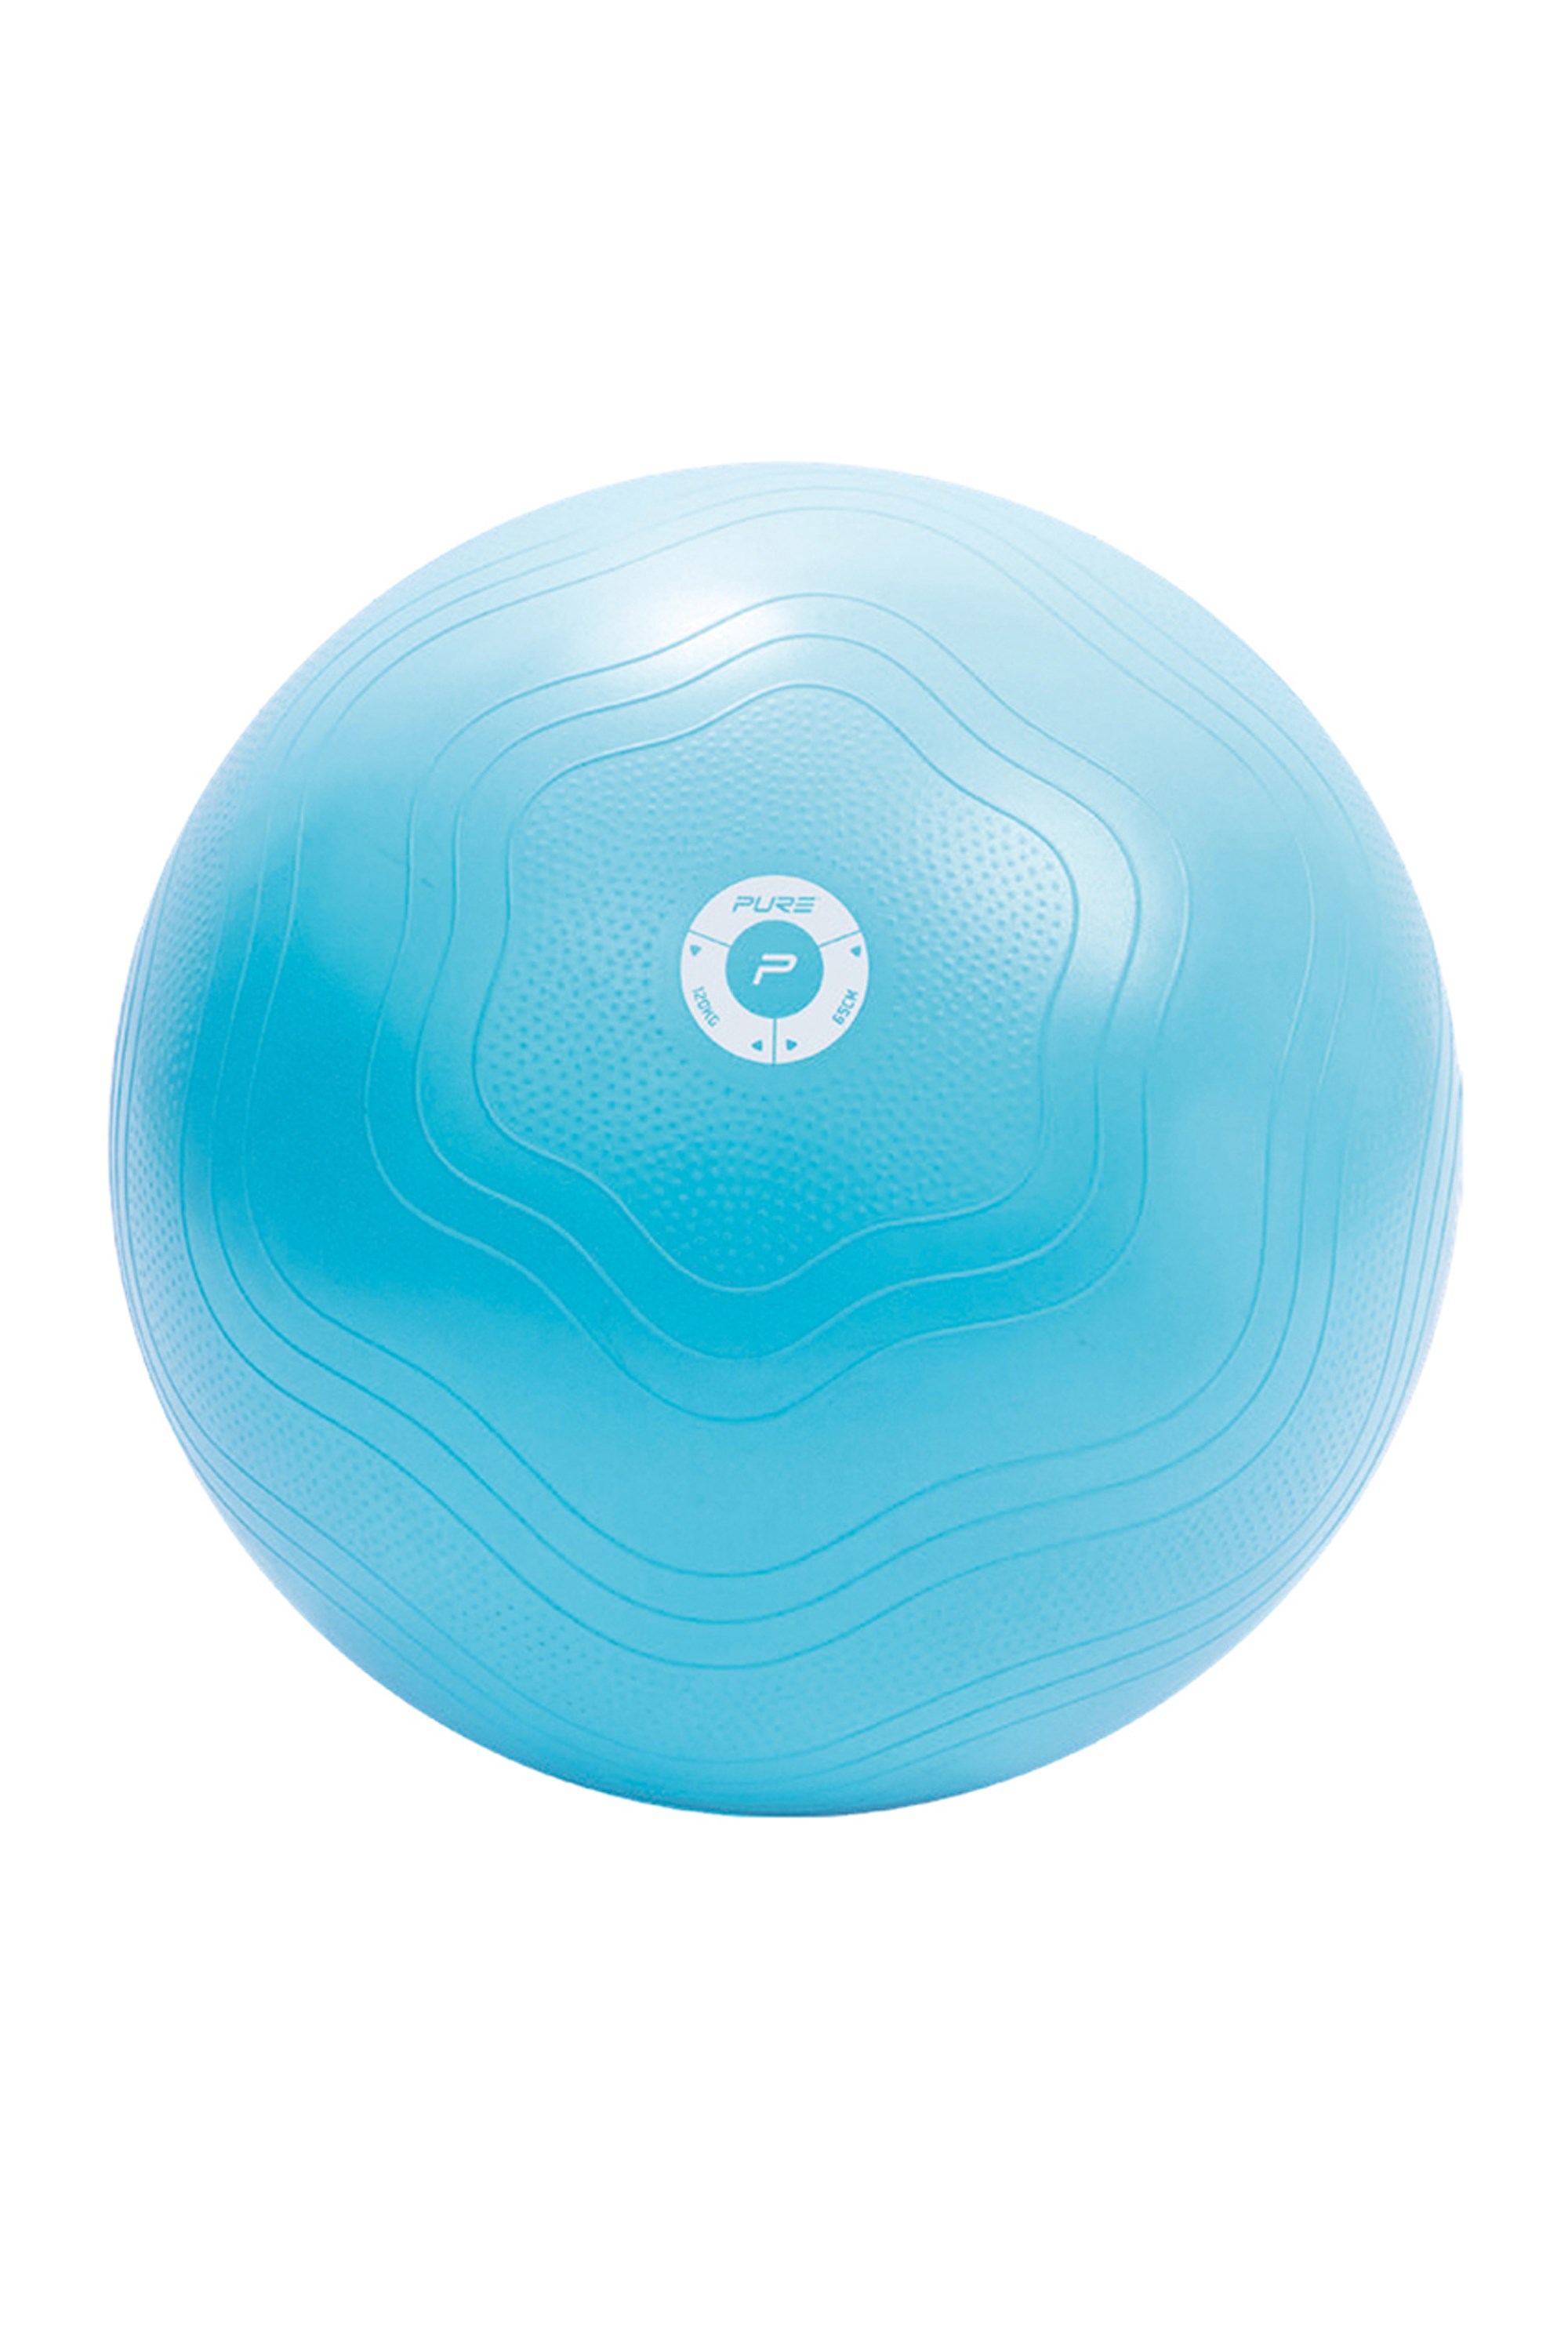 Yogaball Antiburst 65cm -